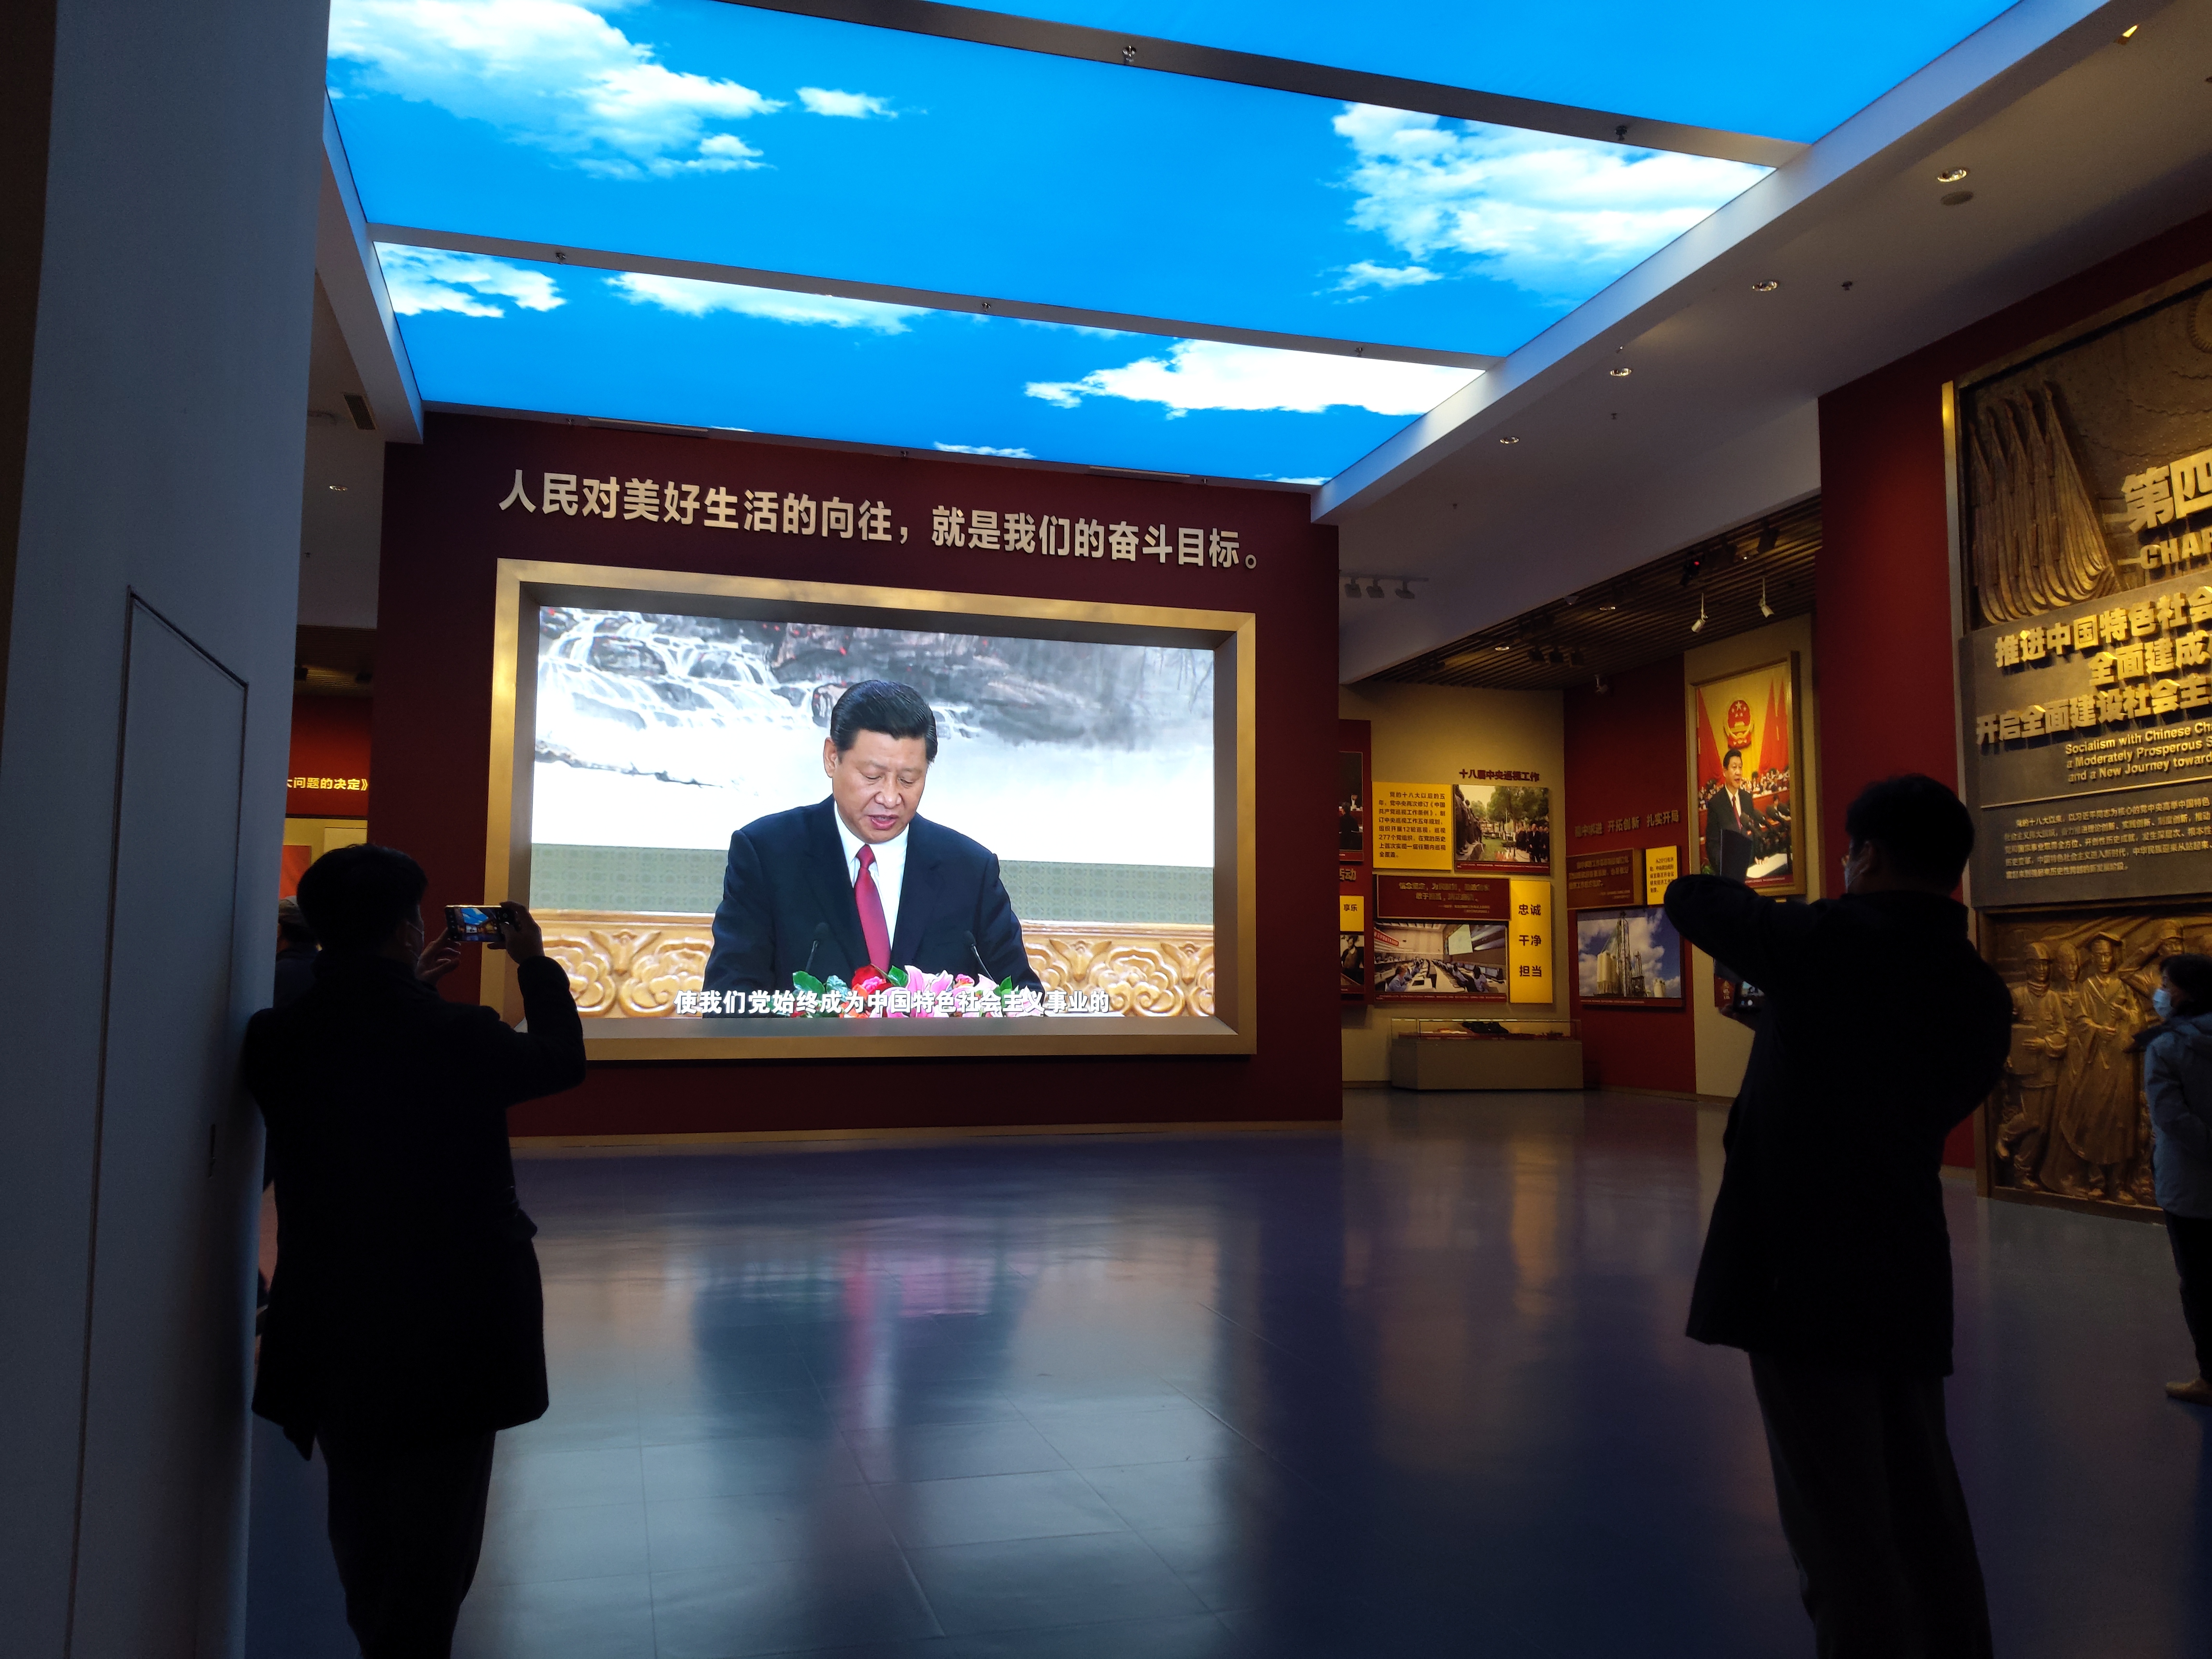 중국 공산당 100주년을 기념해 올해 개관한 중국공산당역사박물관의 시진핑 주석 관련 영상물을 관람객들이 촬영하고 있다. (사진 조성원 기자)